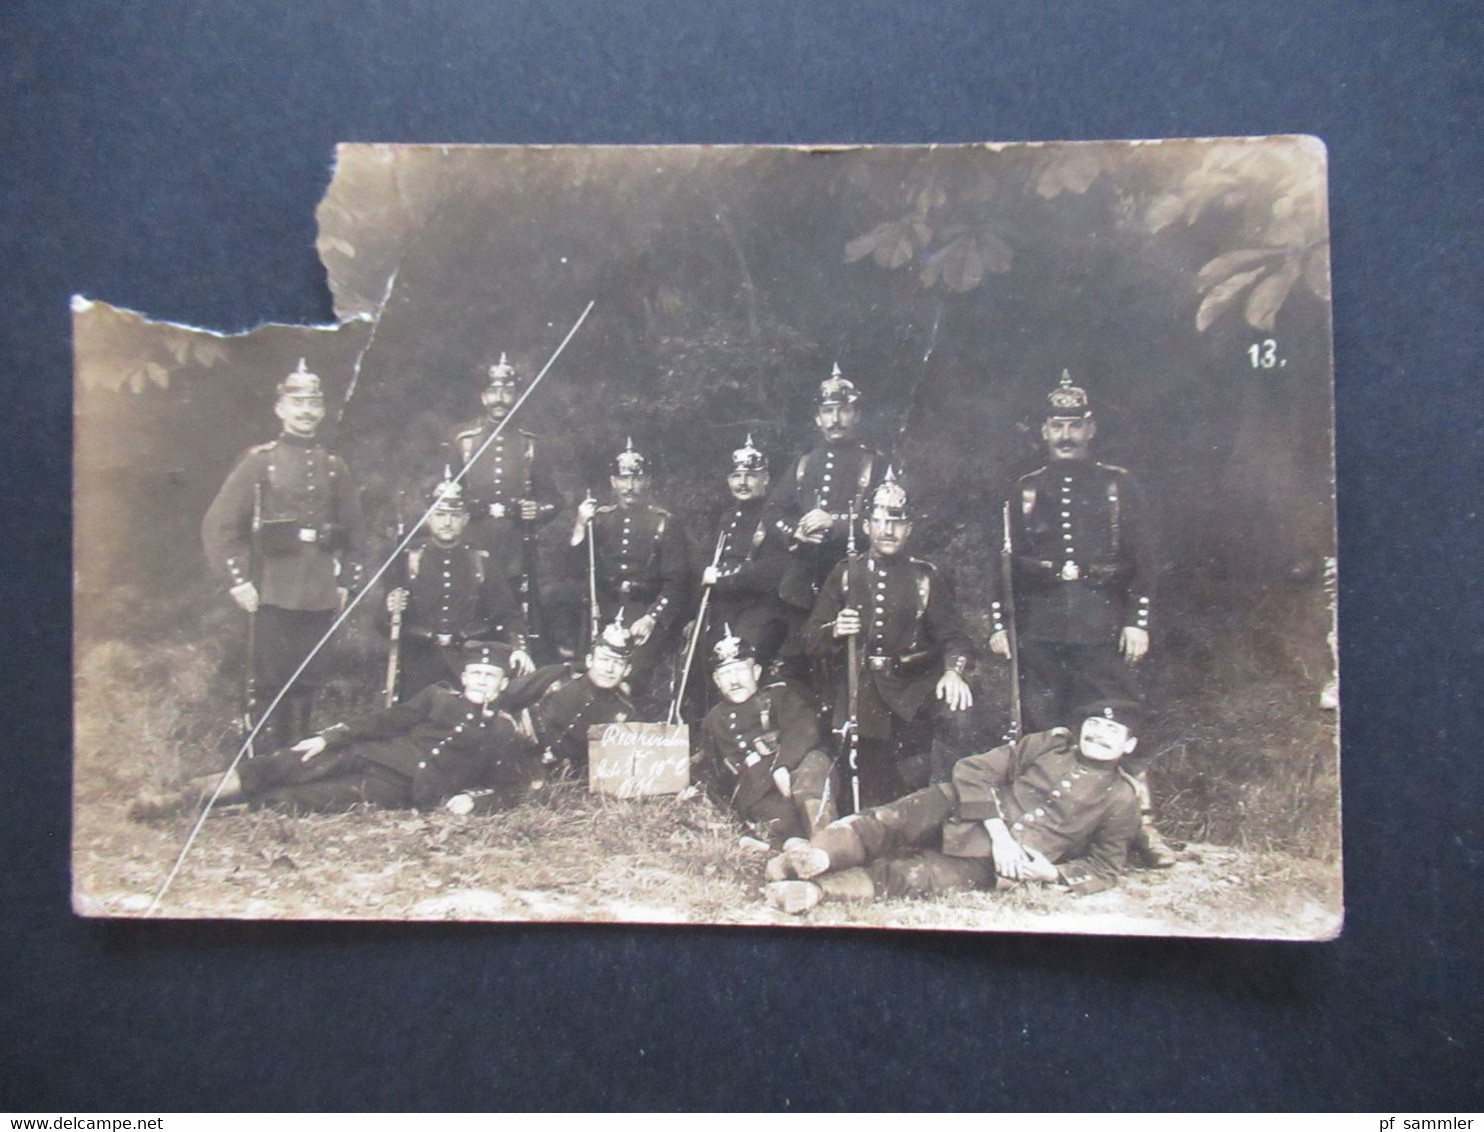 Echtfoto AK Soldaten In Voller Uniform Mit Pickelhaube Und Gewehr Reservisten 1911 Stempel Minden Westf. - Andere Kriege